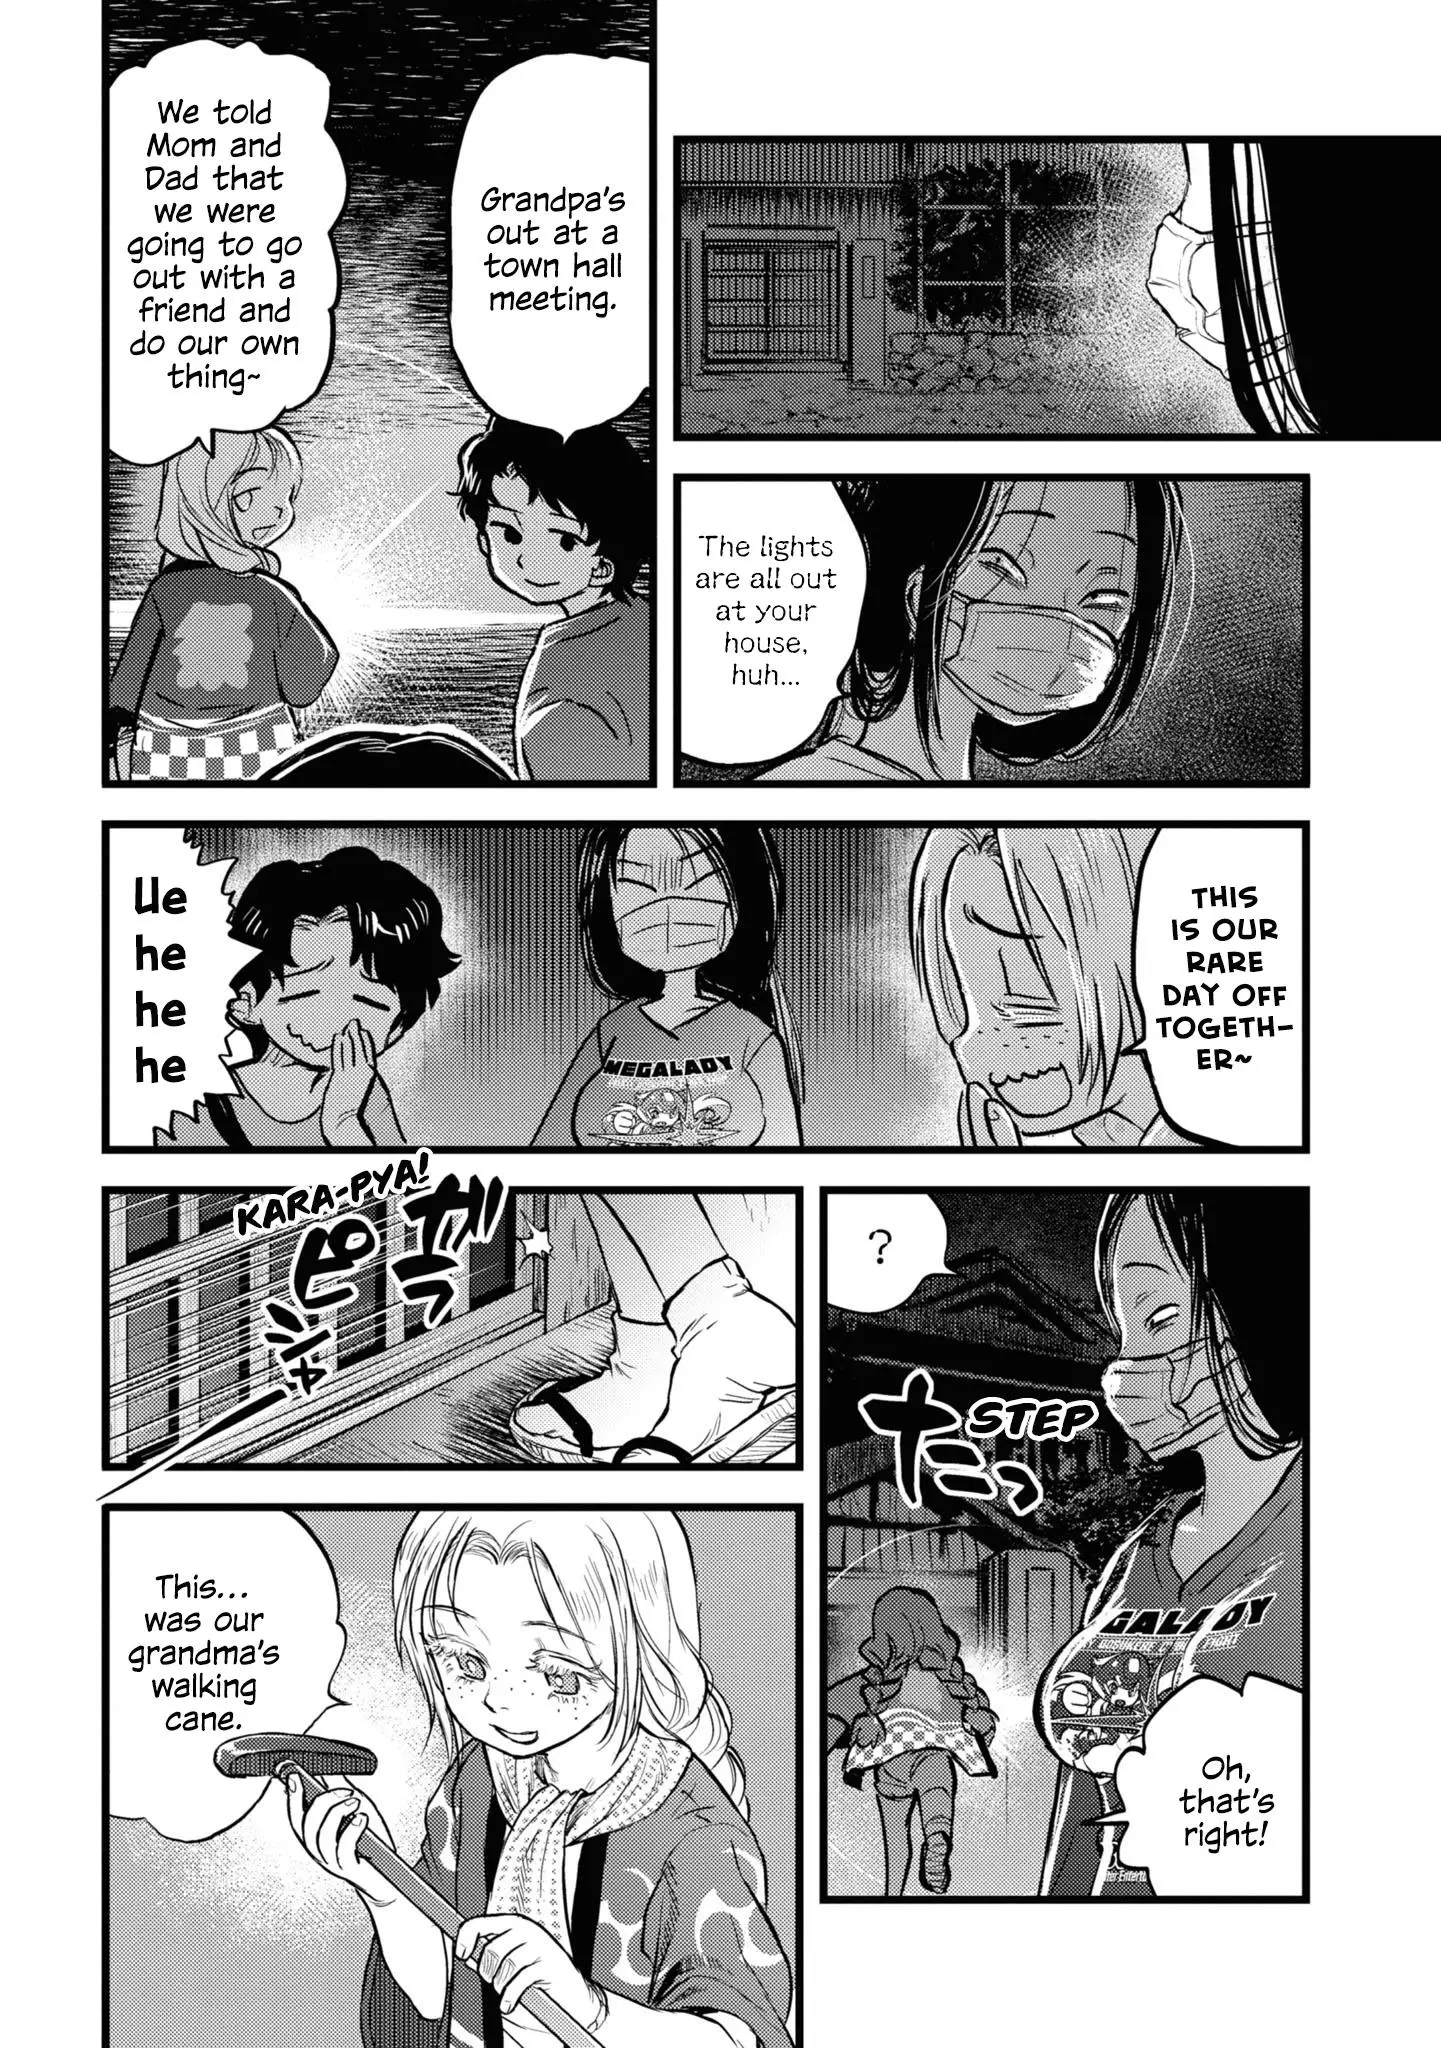 Reiwa No Dara-San - 14 page 9-00891502